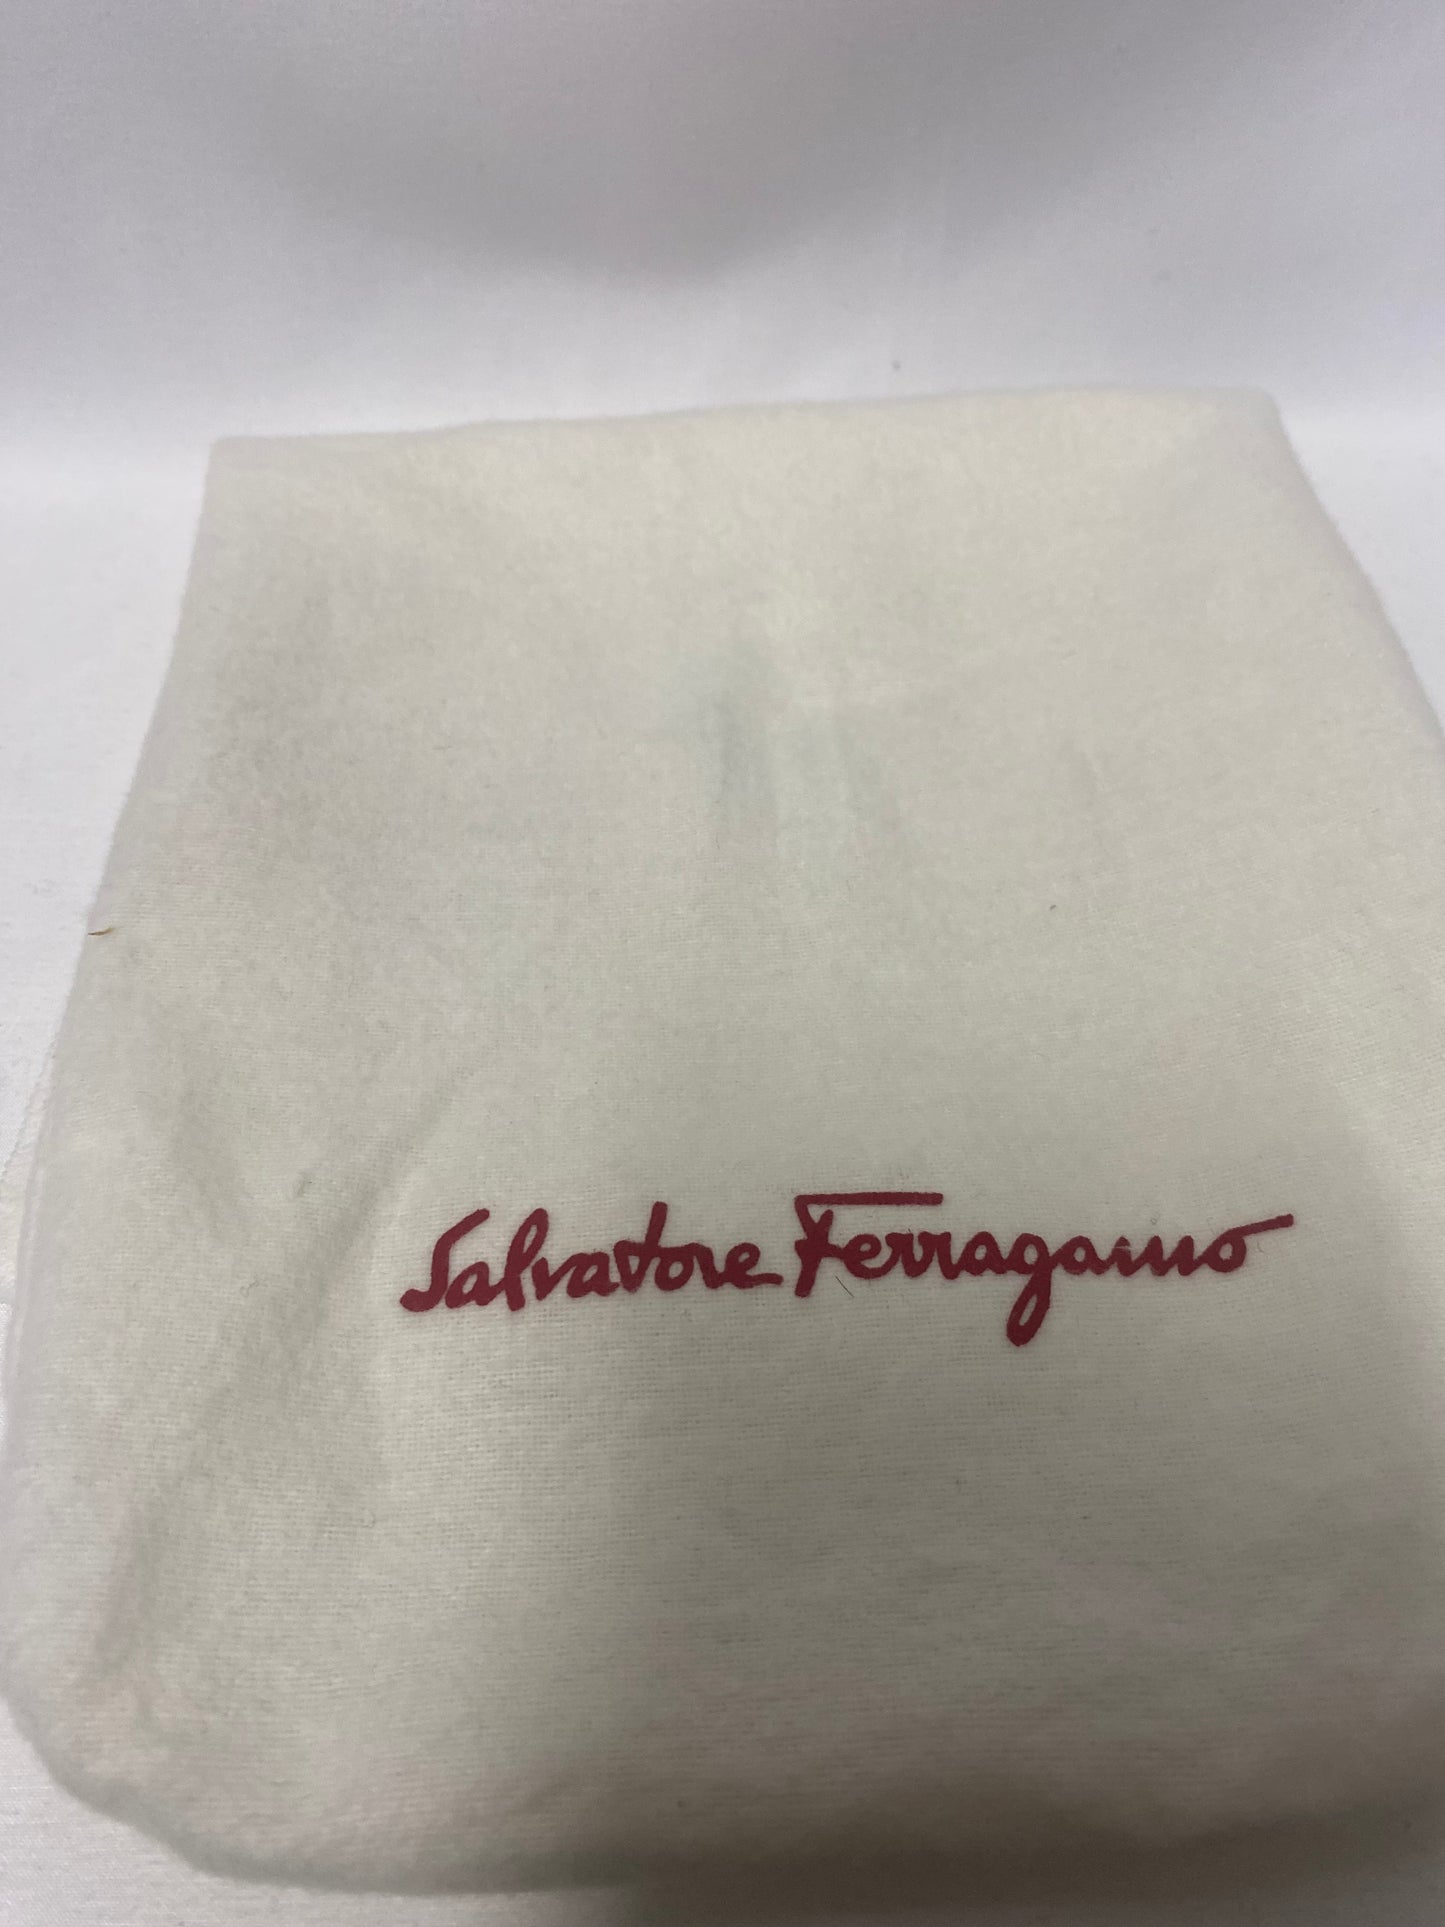 Salvatore Ferragamo Brown Leather Lace Up Oxford 7.5